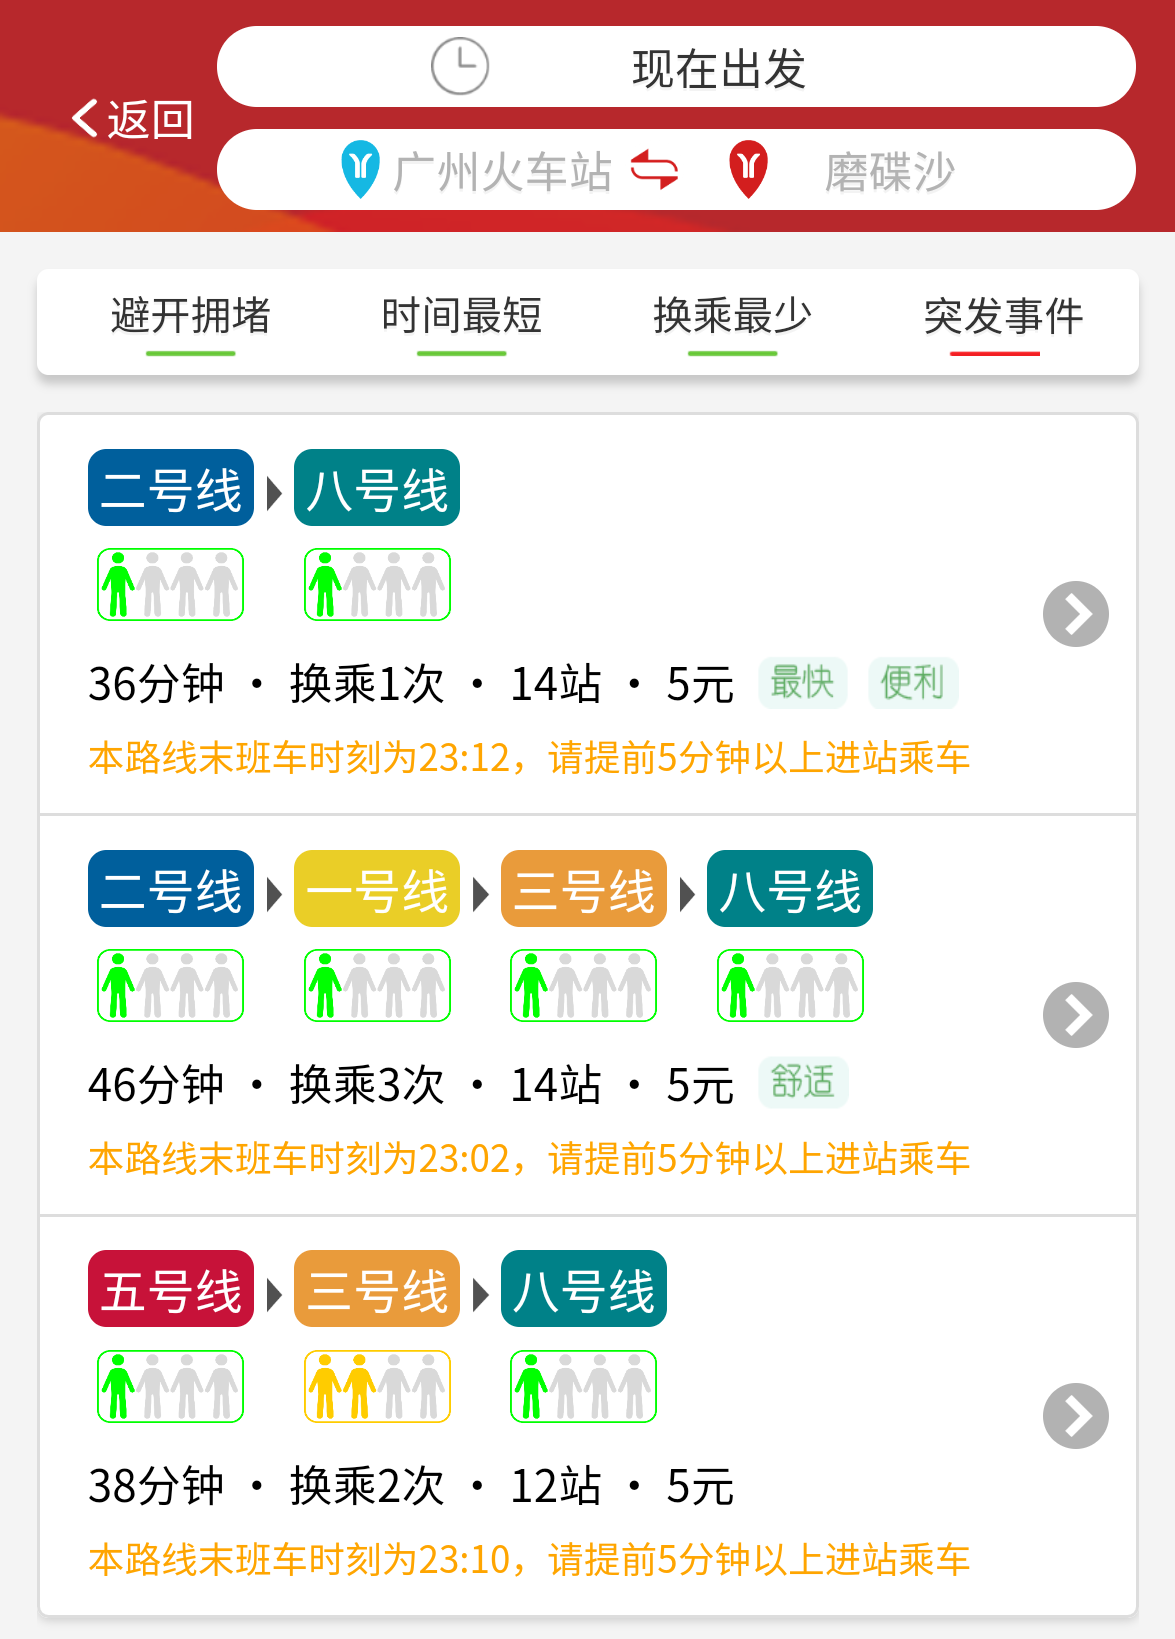 可推荐最优路径,广州地铁官方APP上线“精准出行”功能